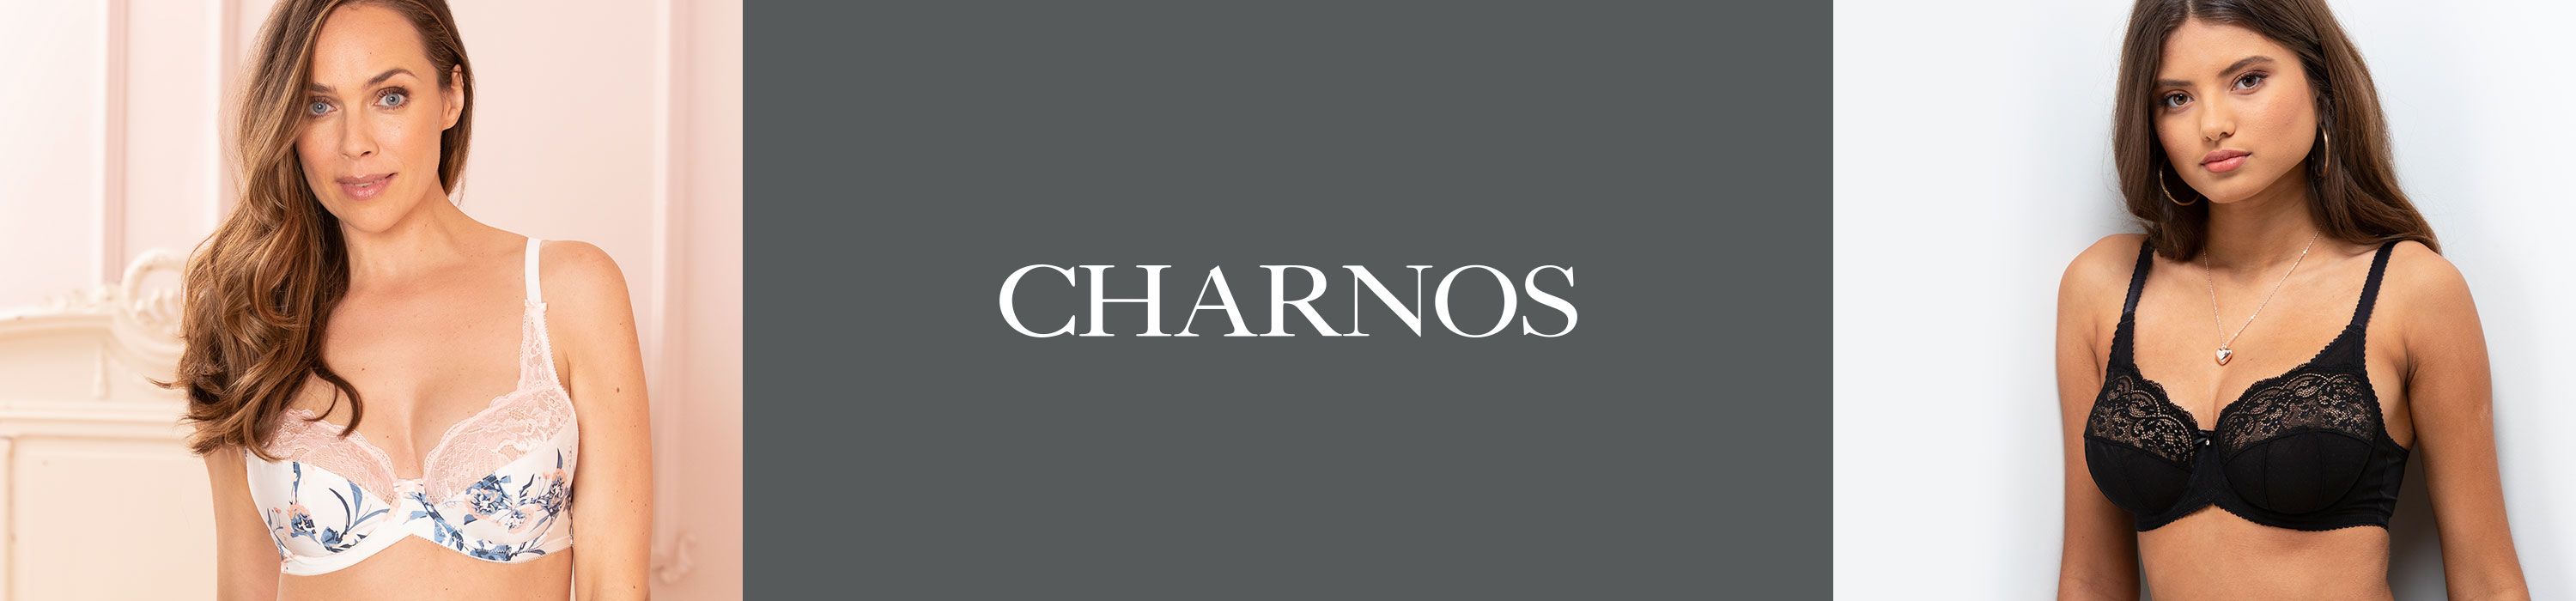 Charnos Bras and Lingerie - Lingerie UK